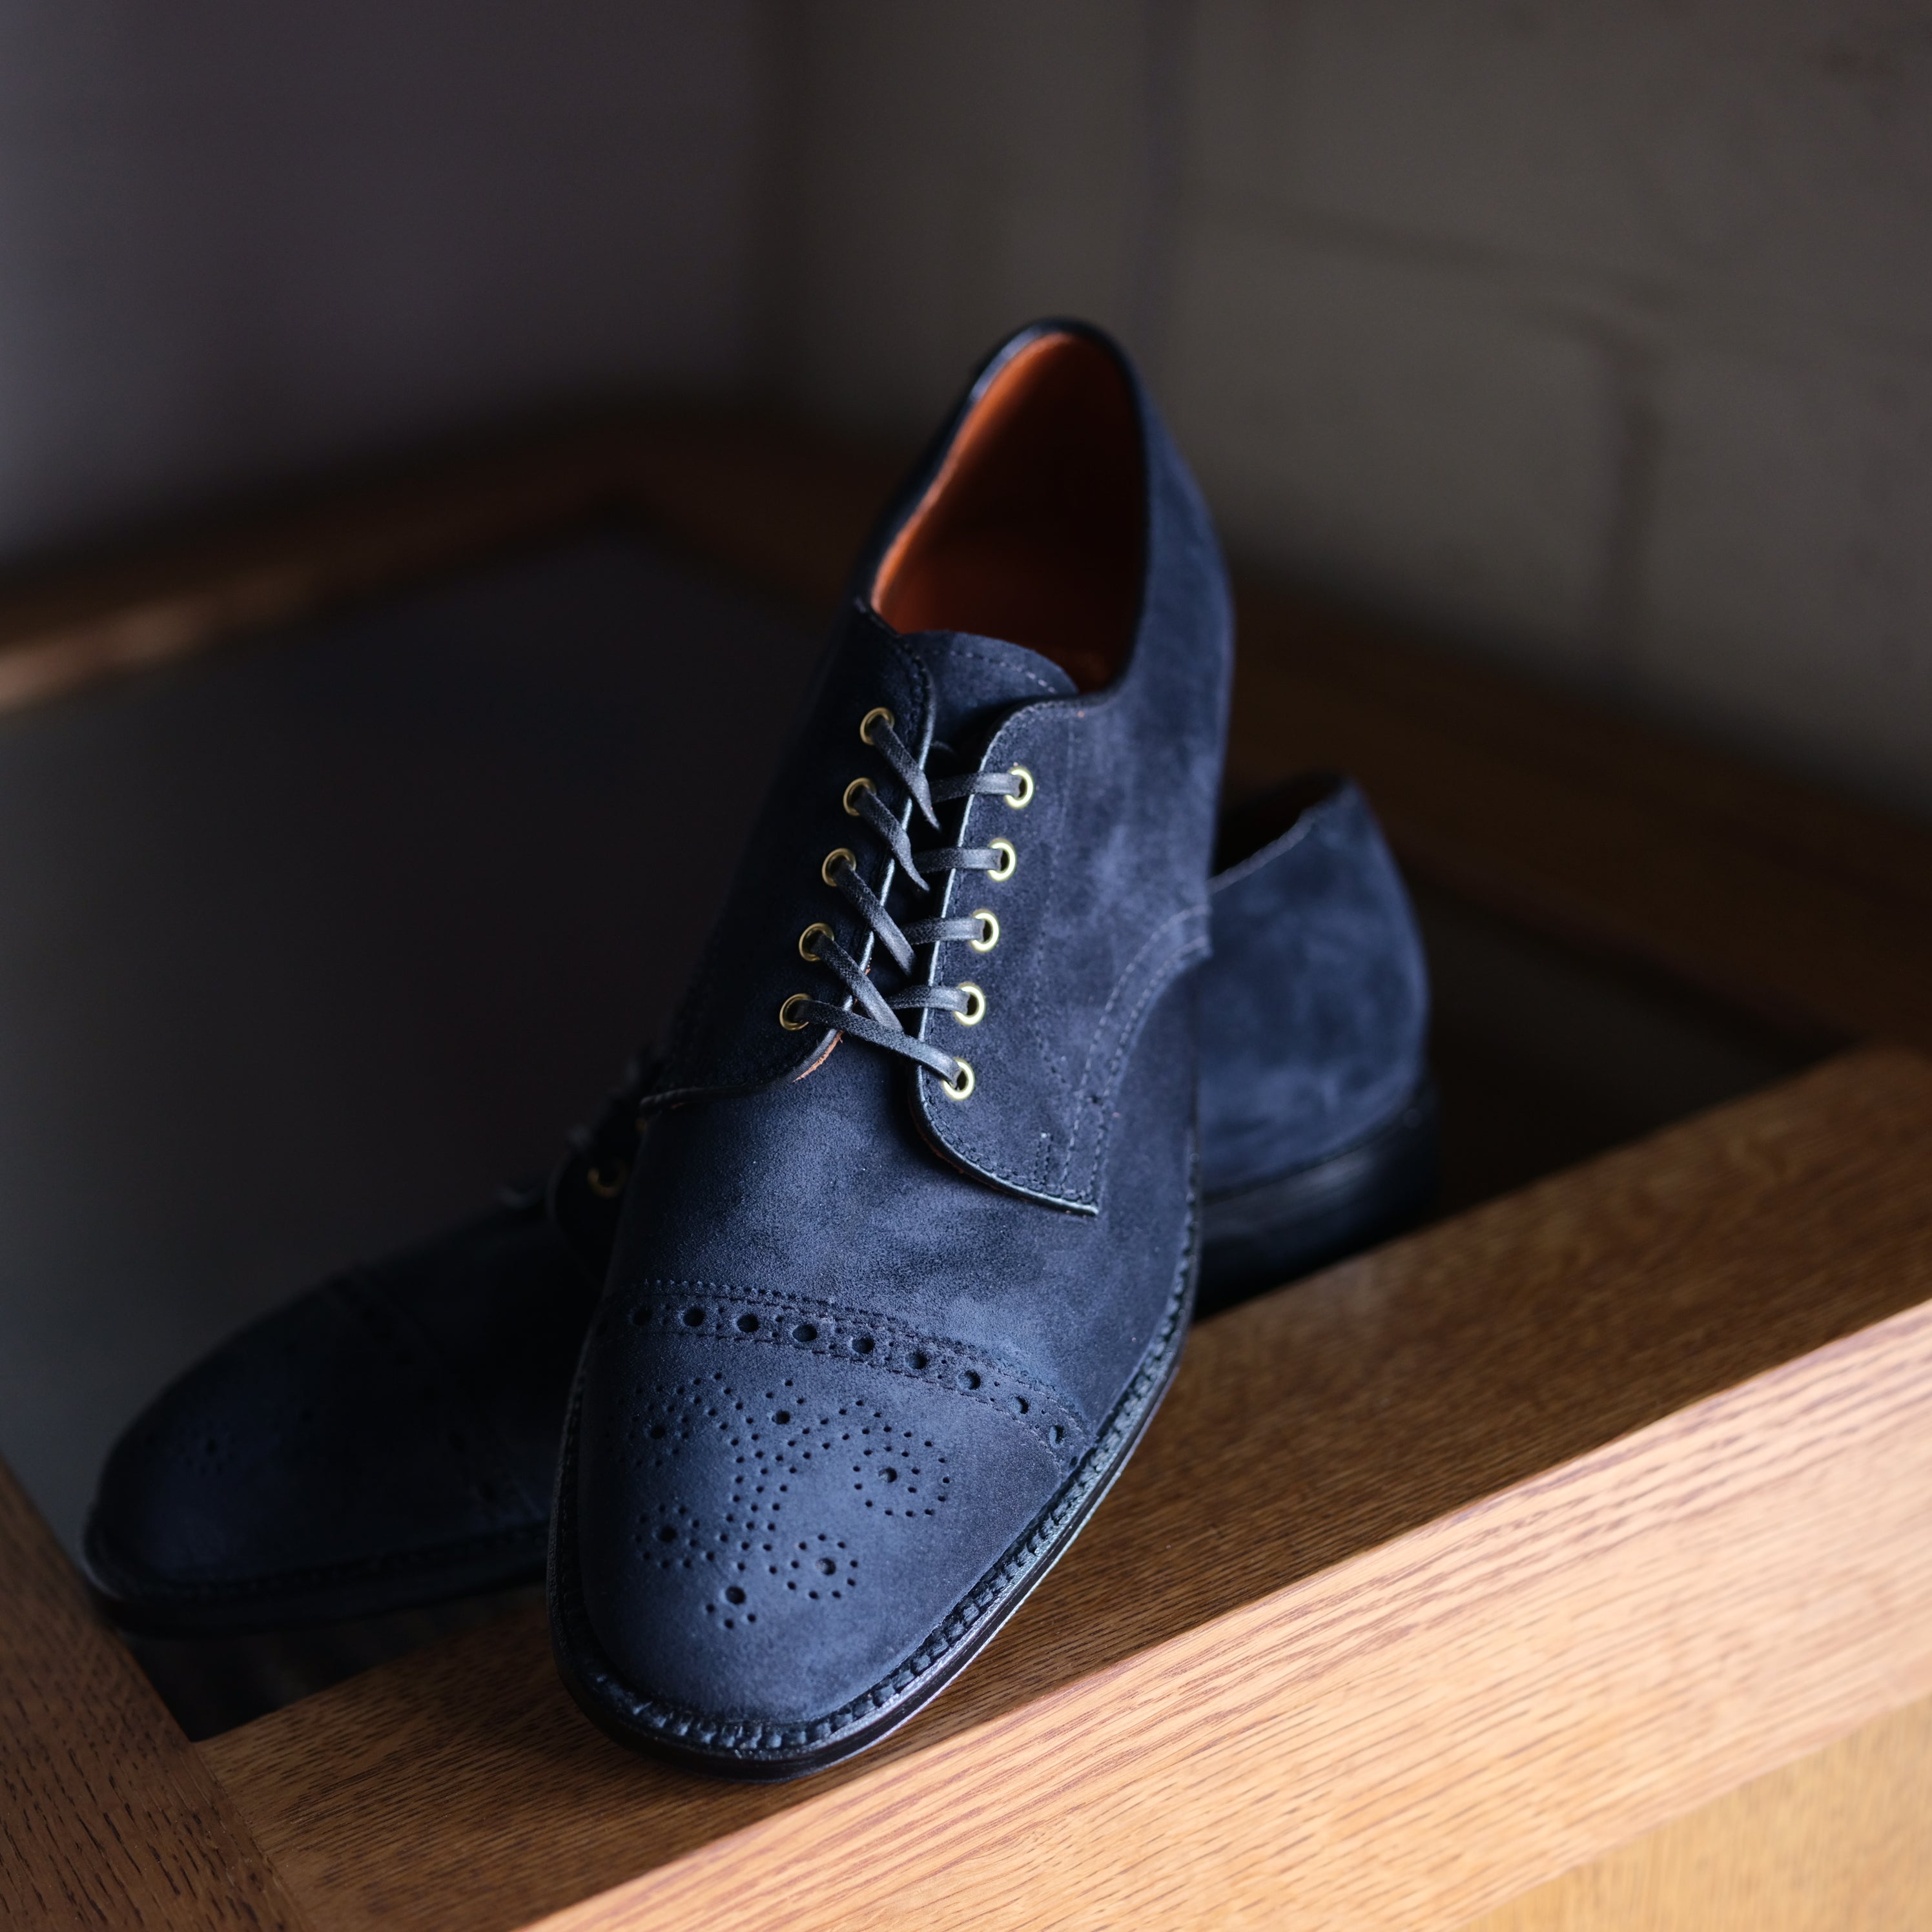 Alden x Brogue Blue Suede Shoes 7.5D